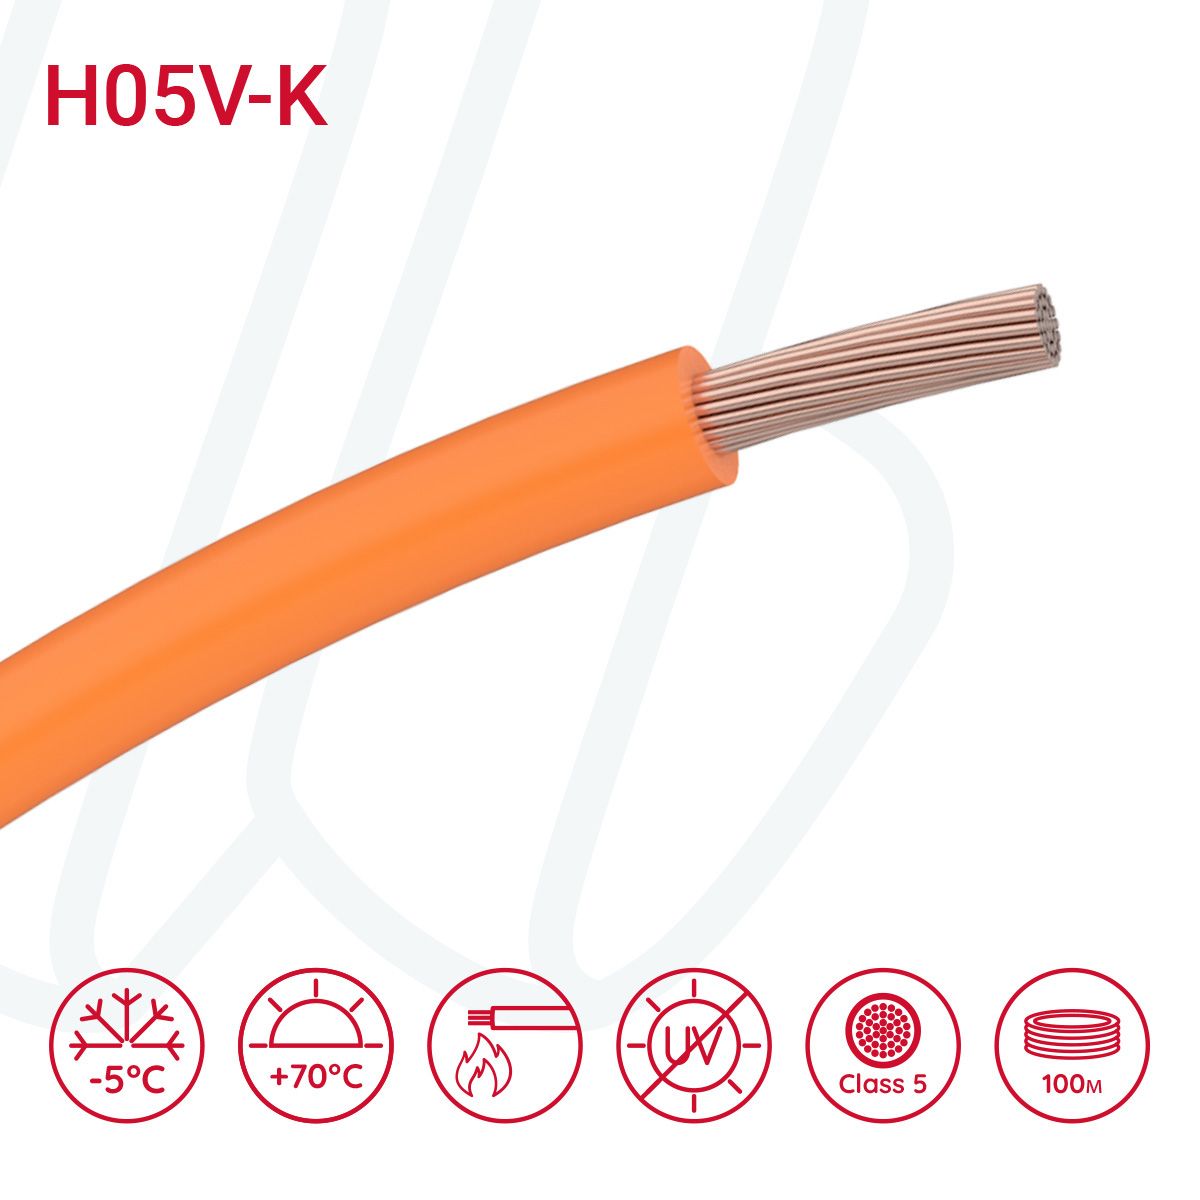 Провід монтажний гнучкий H05V-K 1 мм² помаранчевий, 01, 1.0